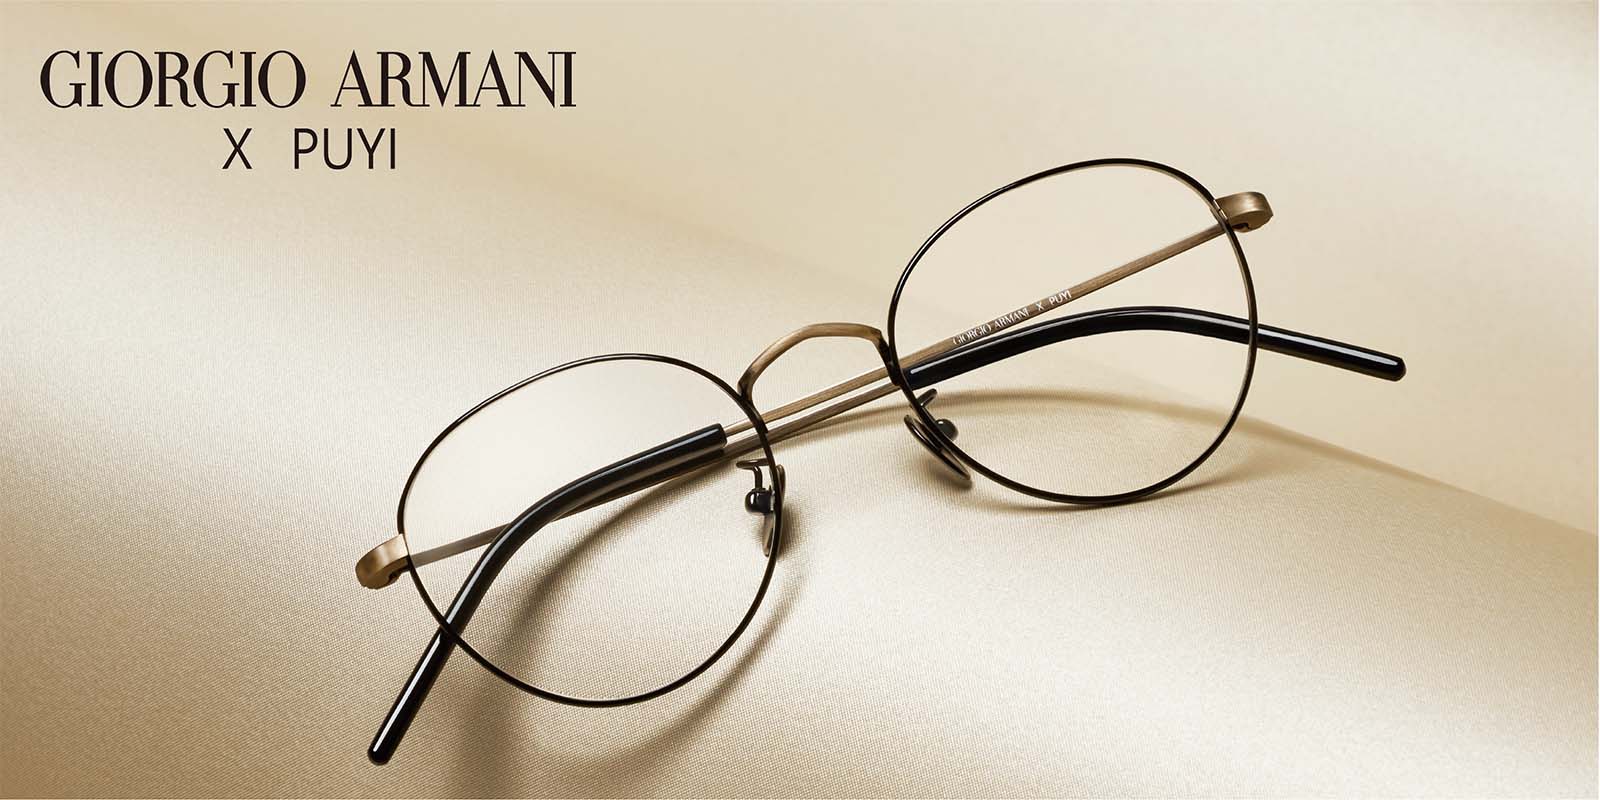 Giorgio Armani - Sunglasses and Glasses | Puyi Optical